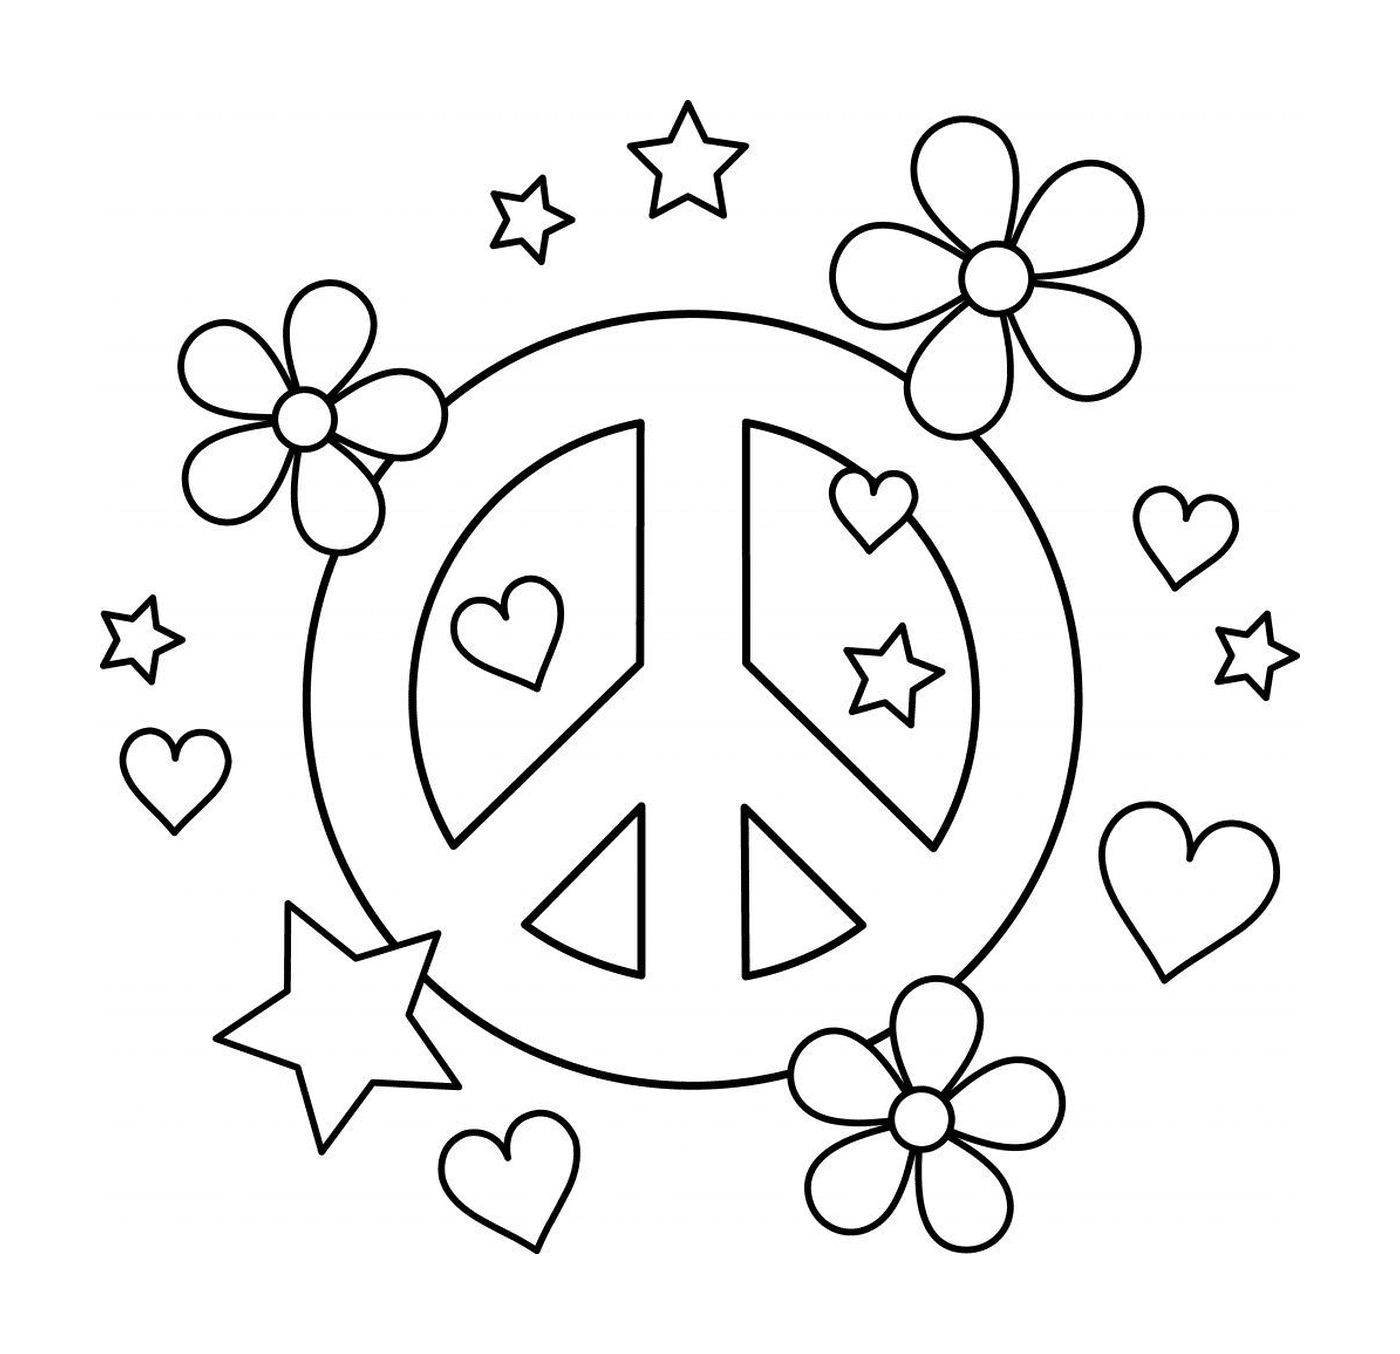   Symbole de paix avec cœurs et fleurs 